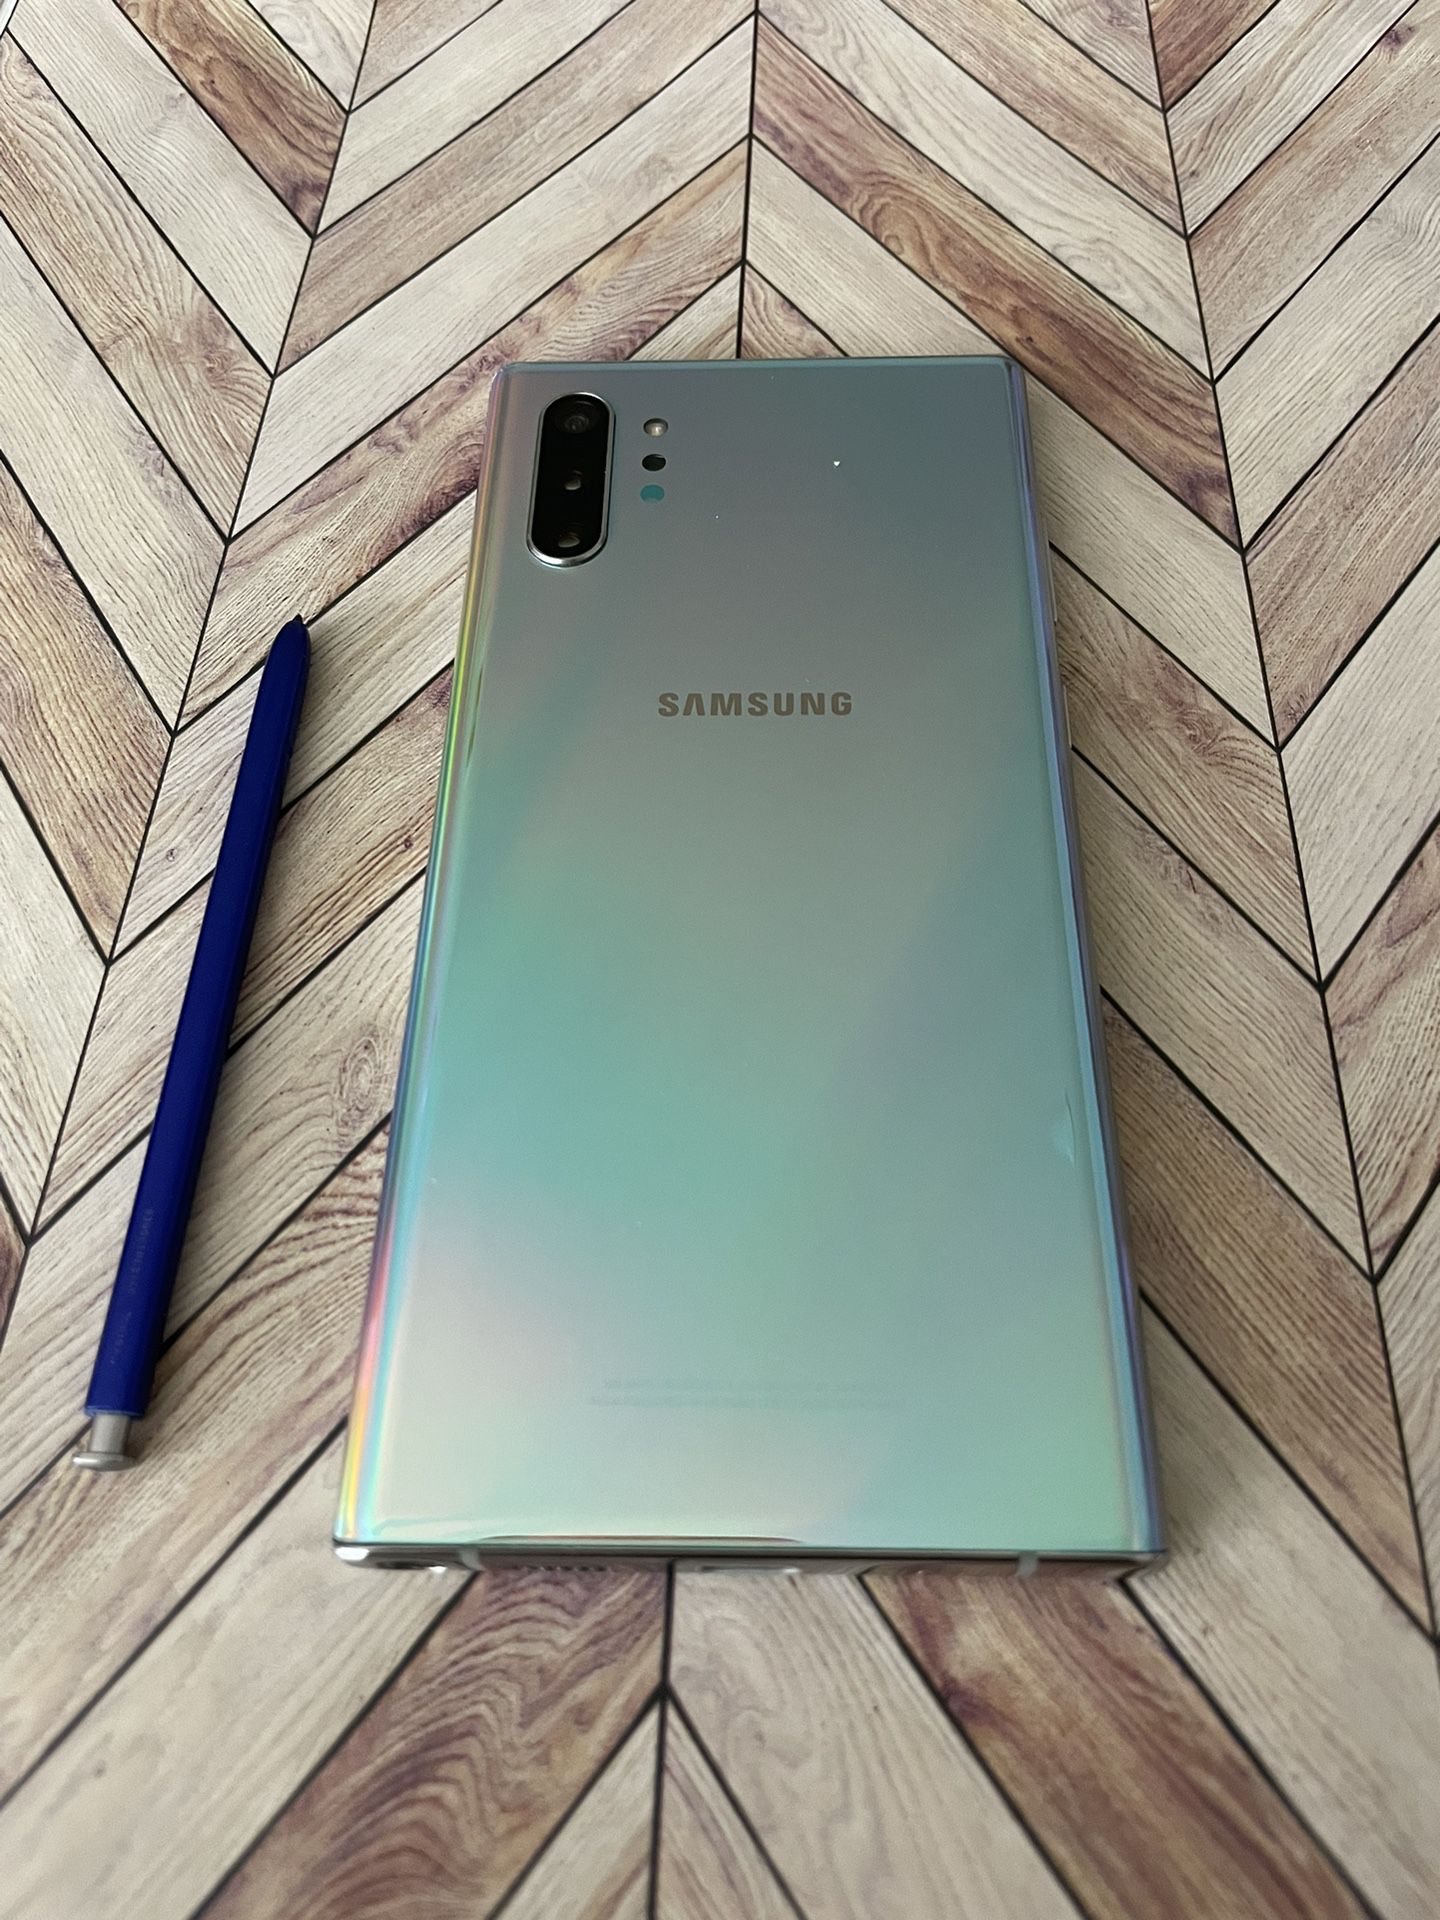 Samsung Galaxy Note 10 PLUS (256GB) Unlocked 🌏 Liberado Para Cualquier 